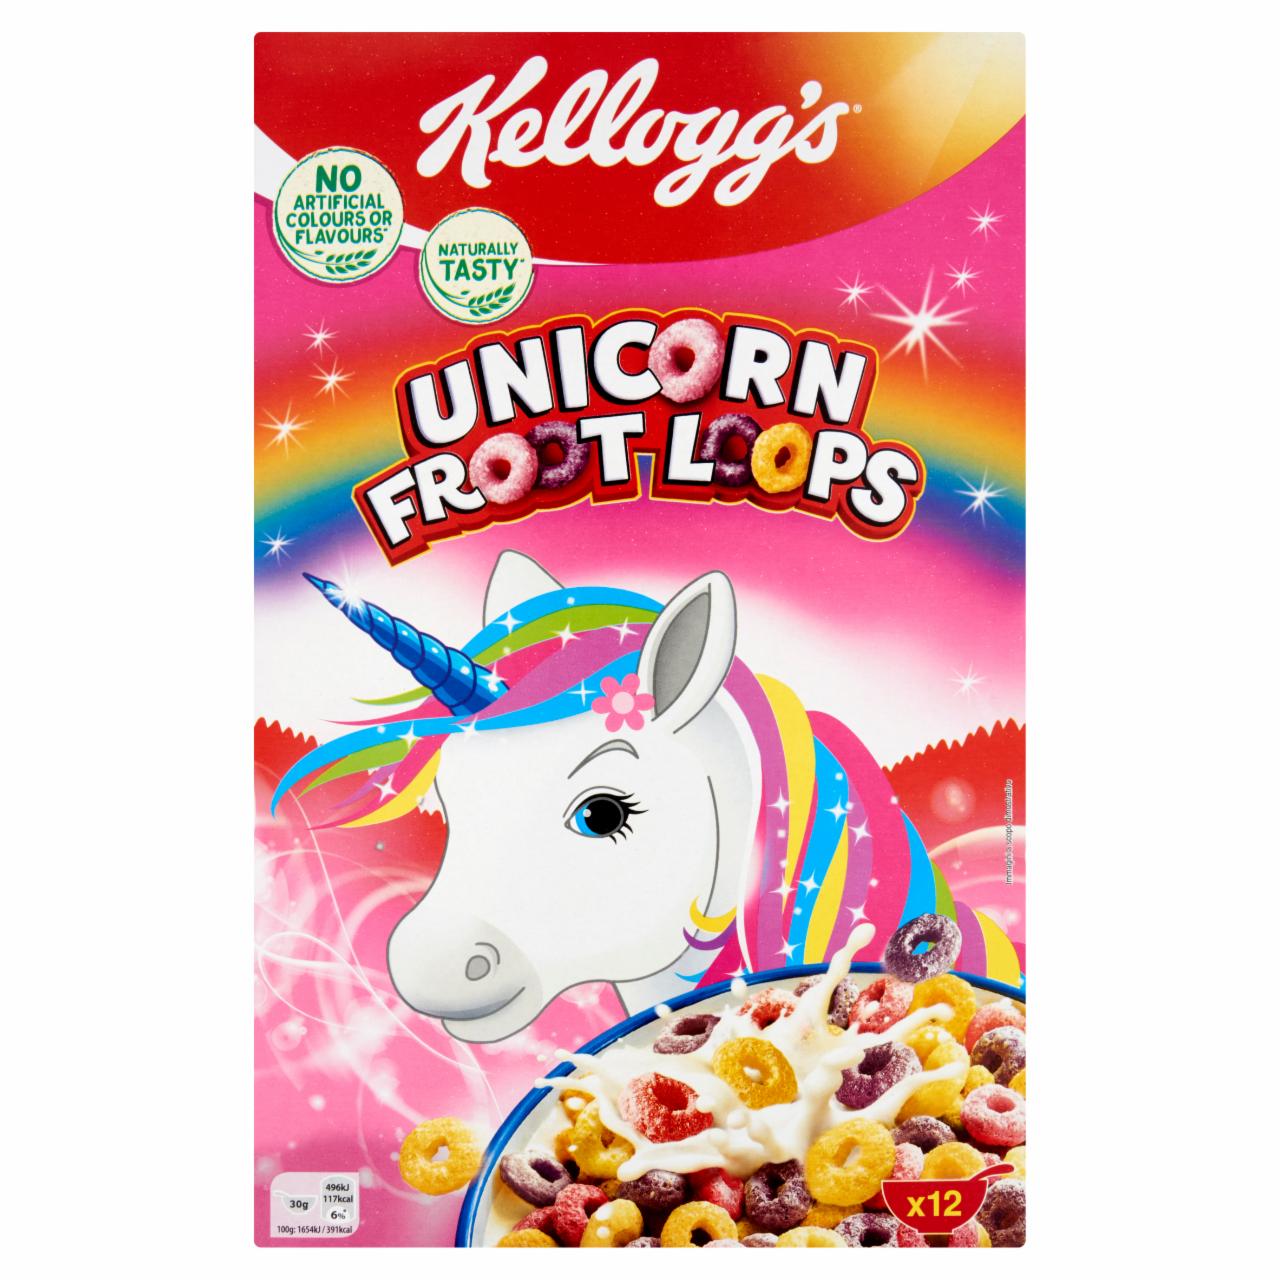 Képek - Kellogg's Unicorn Froot Loops gyümölcs ízesítésű gabonakarikák 375 g